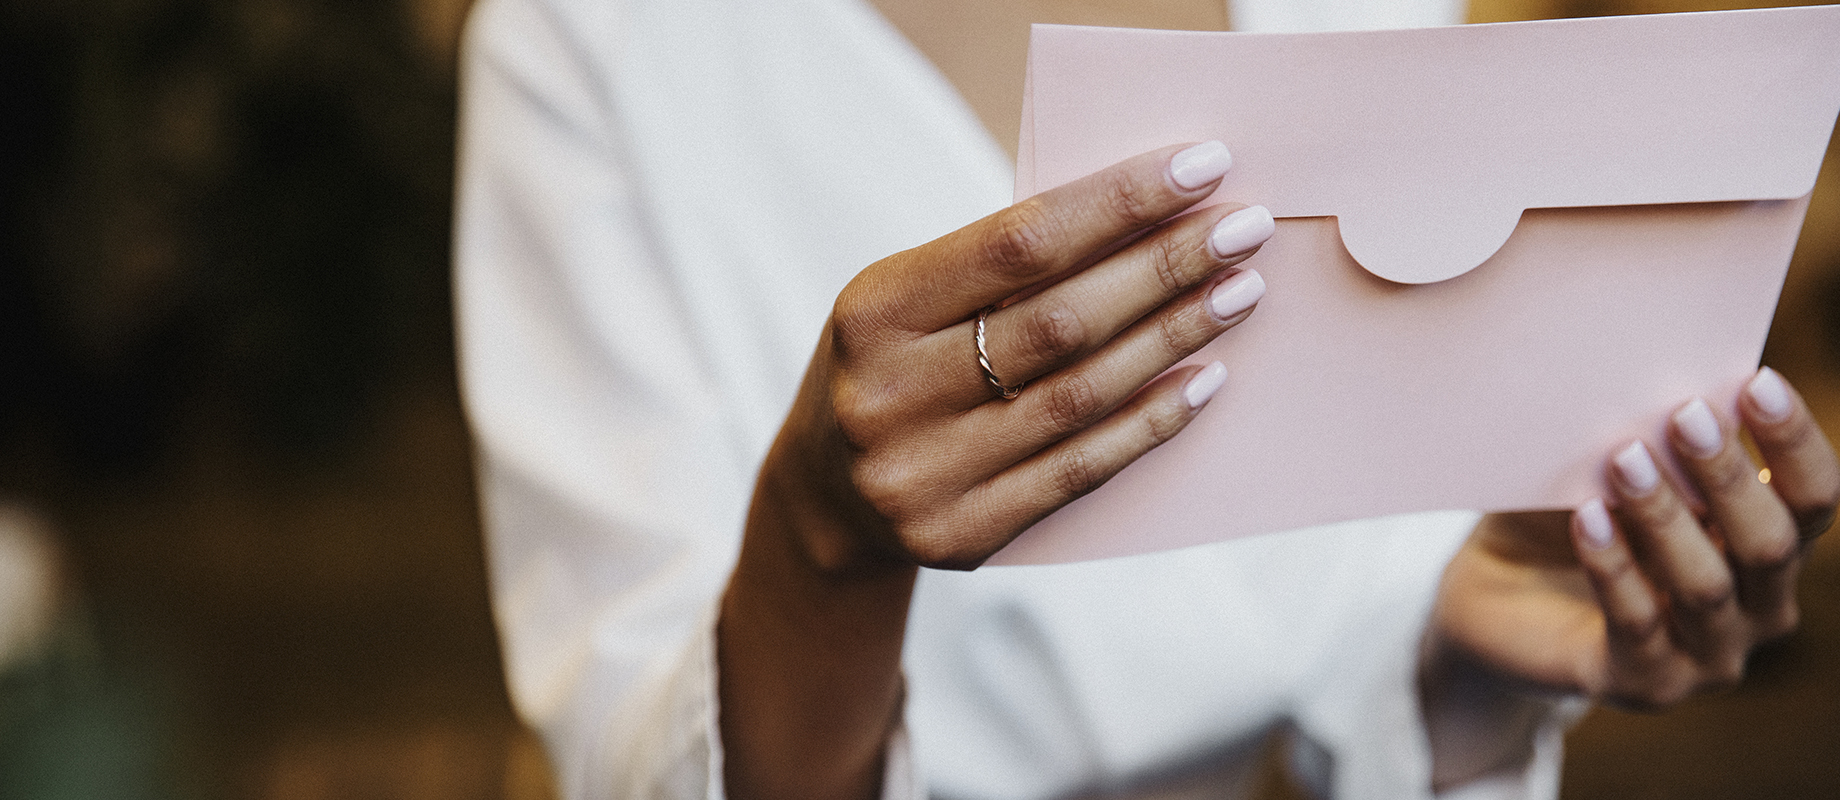 Une personne tient une enveloppe rose poudrée entre ses mains